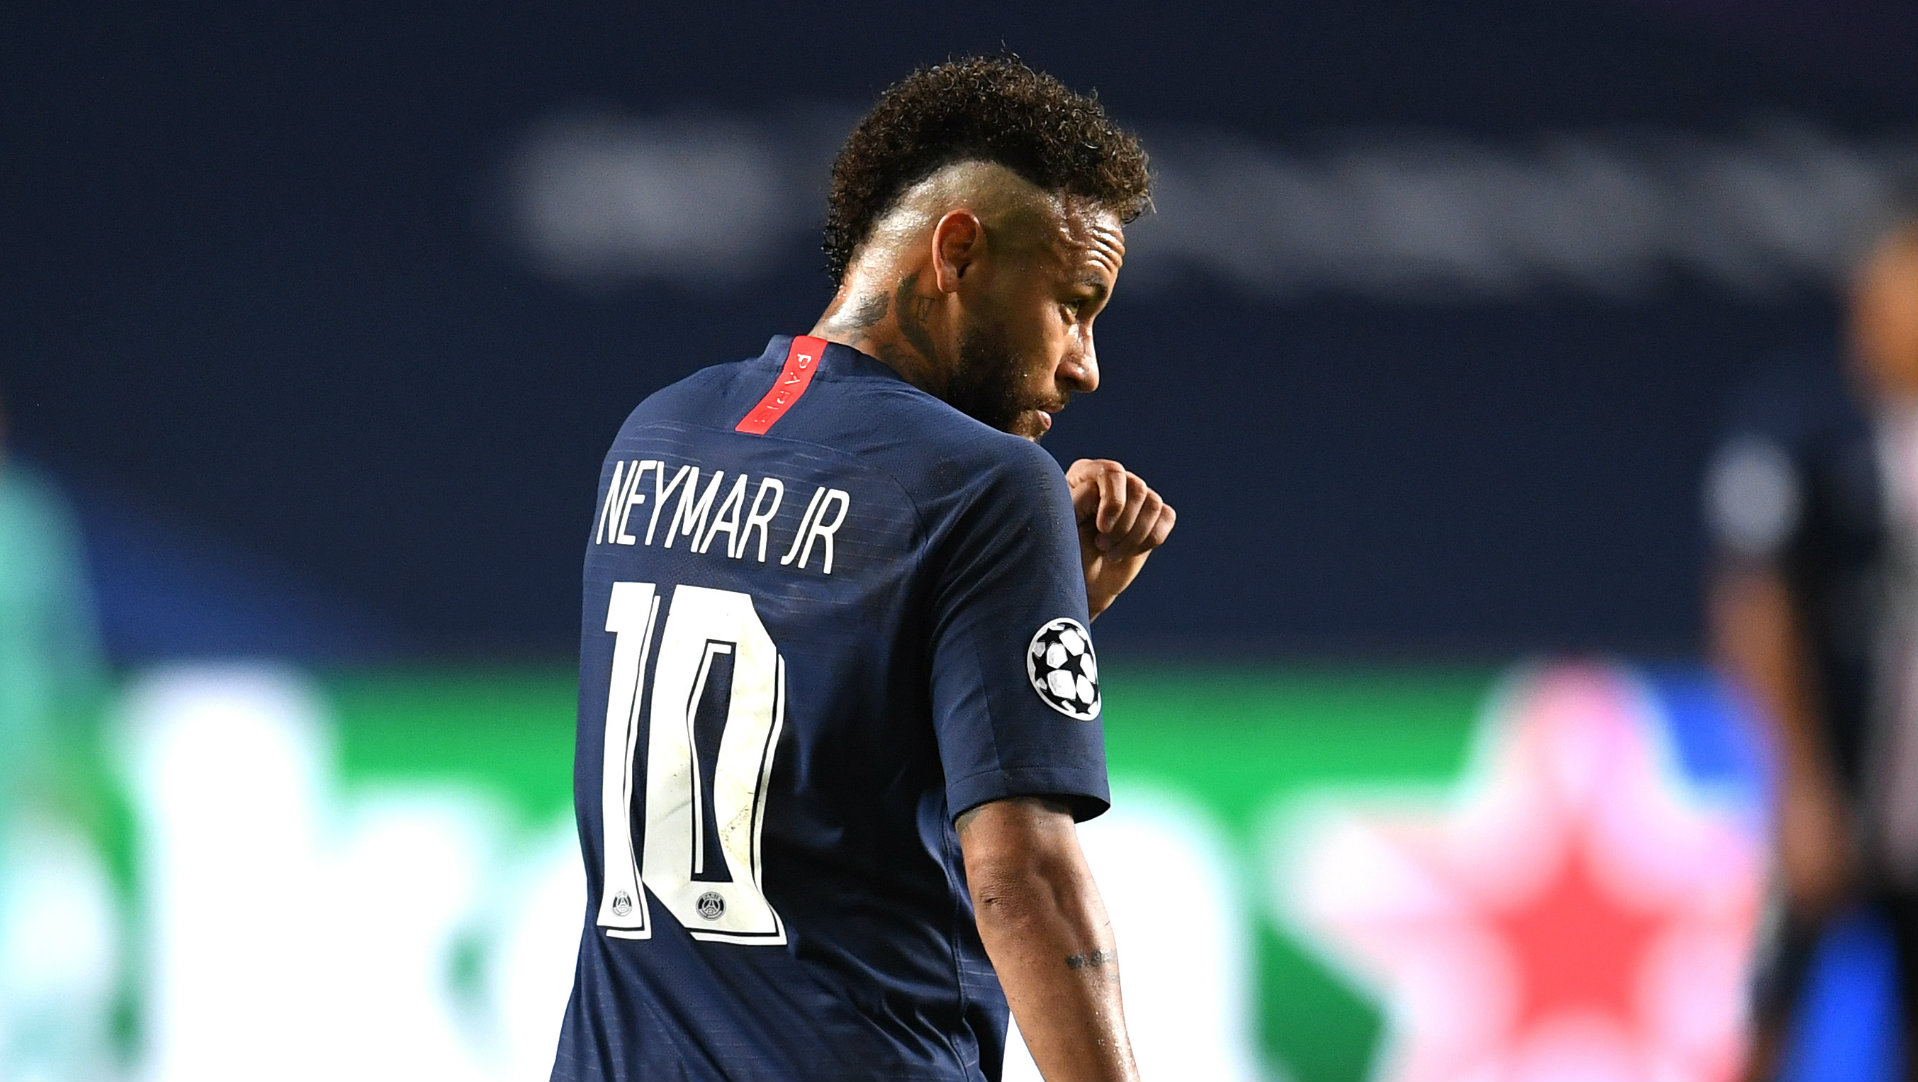 O fico de Neymar: de insatisfeito a 'filho' do presidente do PSG | Goal.com